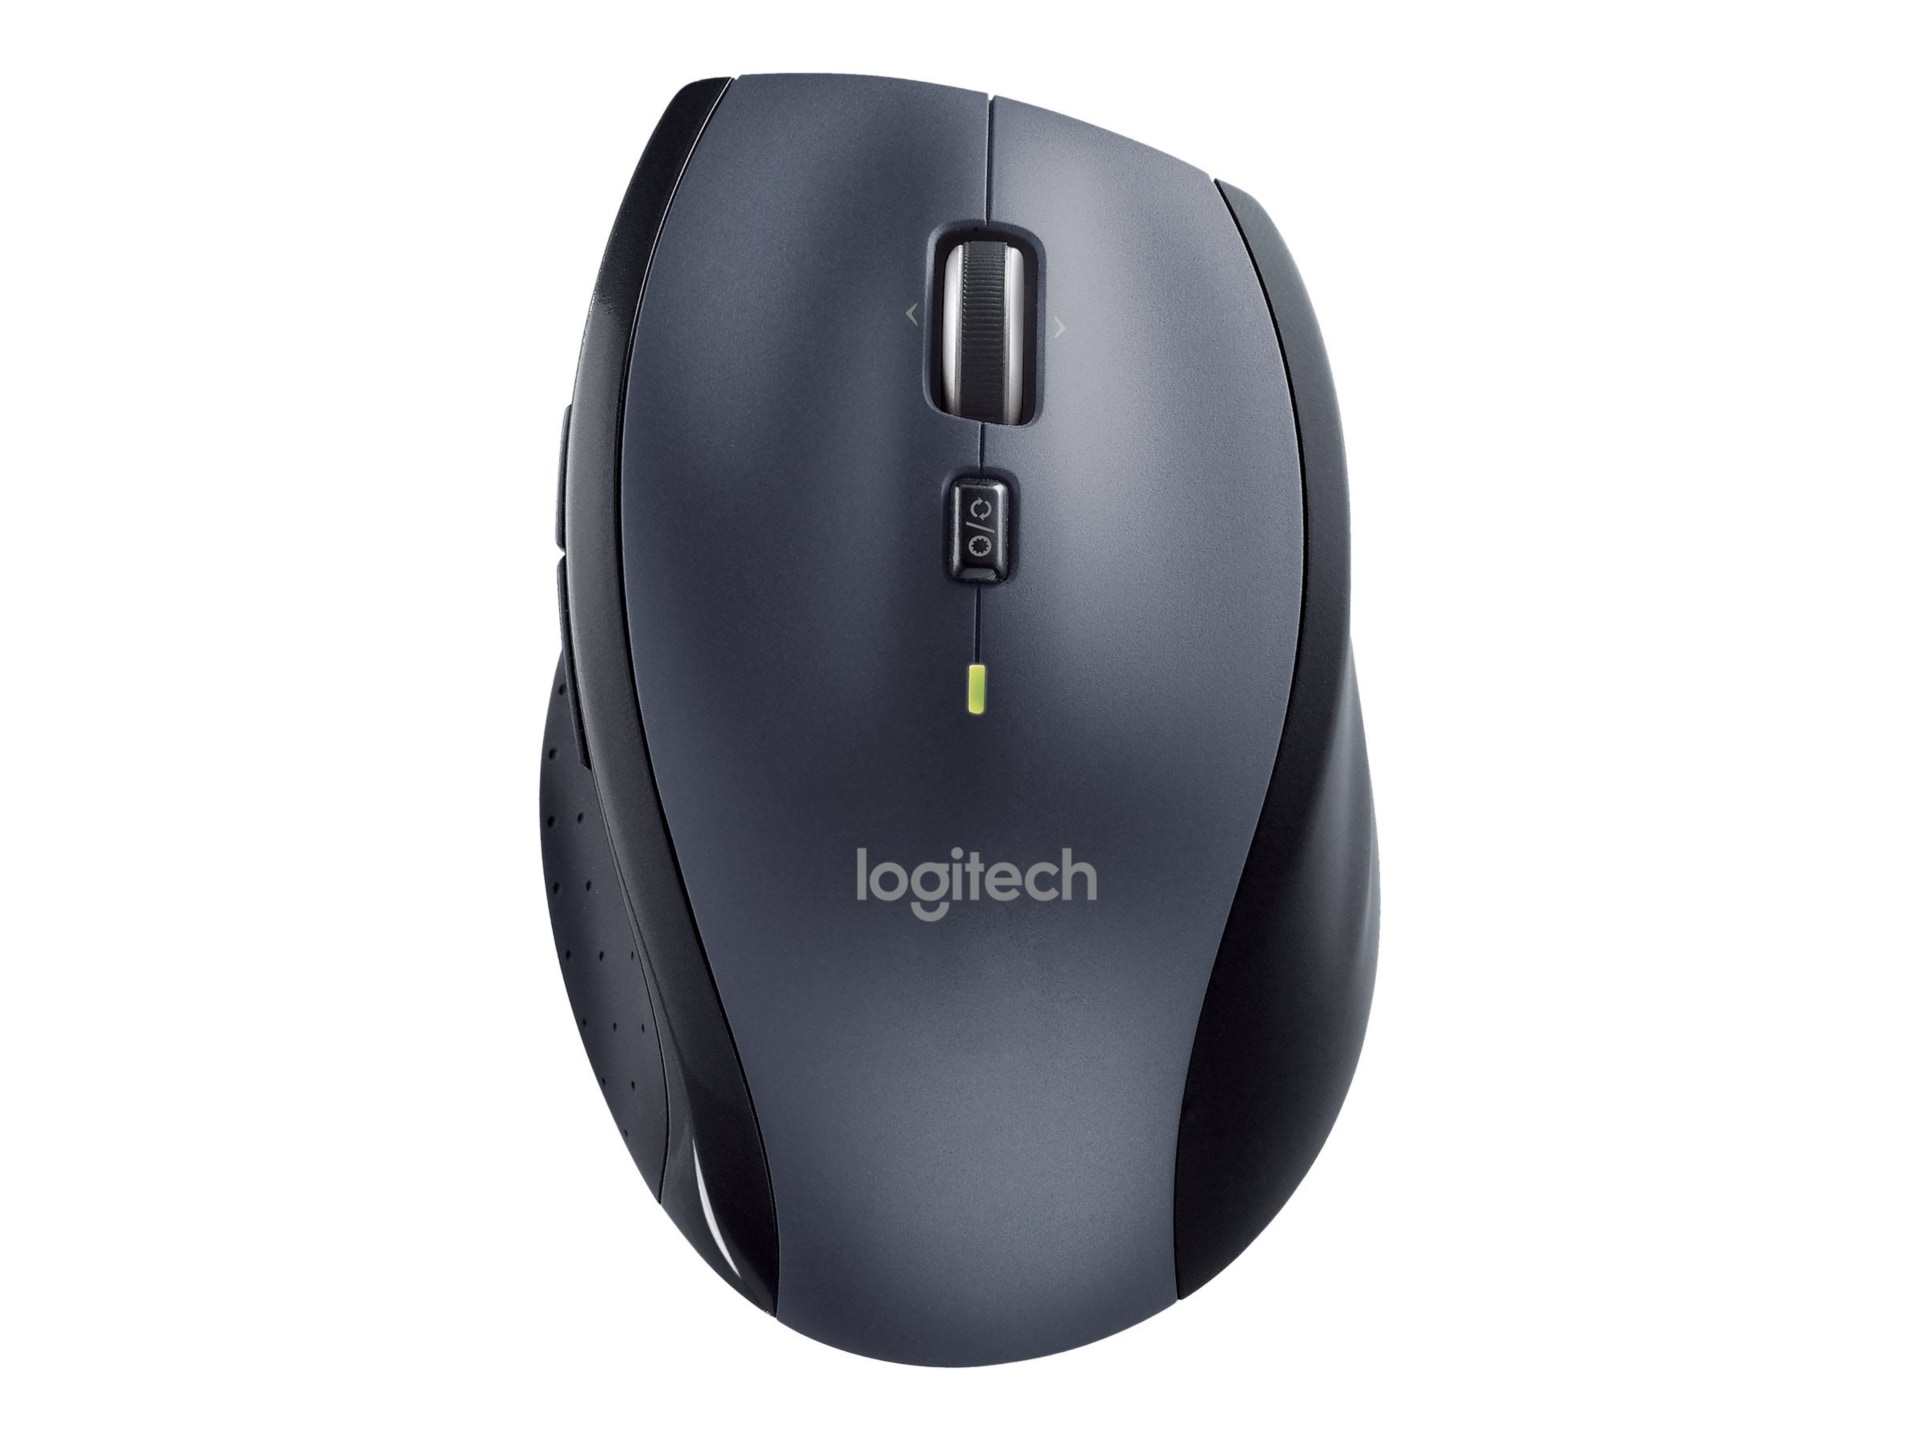 Logitech Marathon M705 - mouse 2.4 - charcoal - 910-001935 - Mice CDW.com